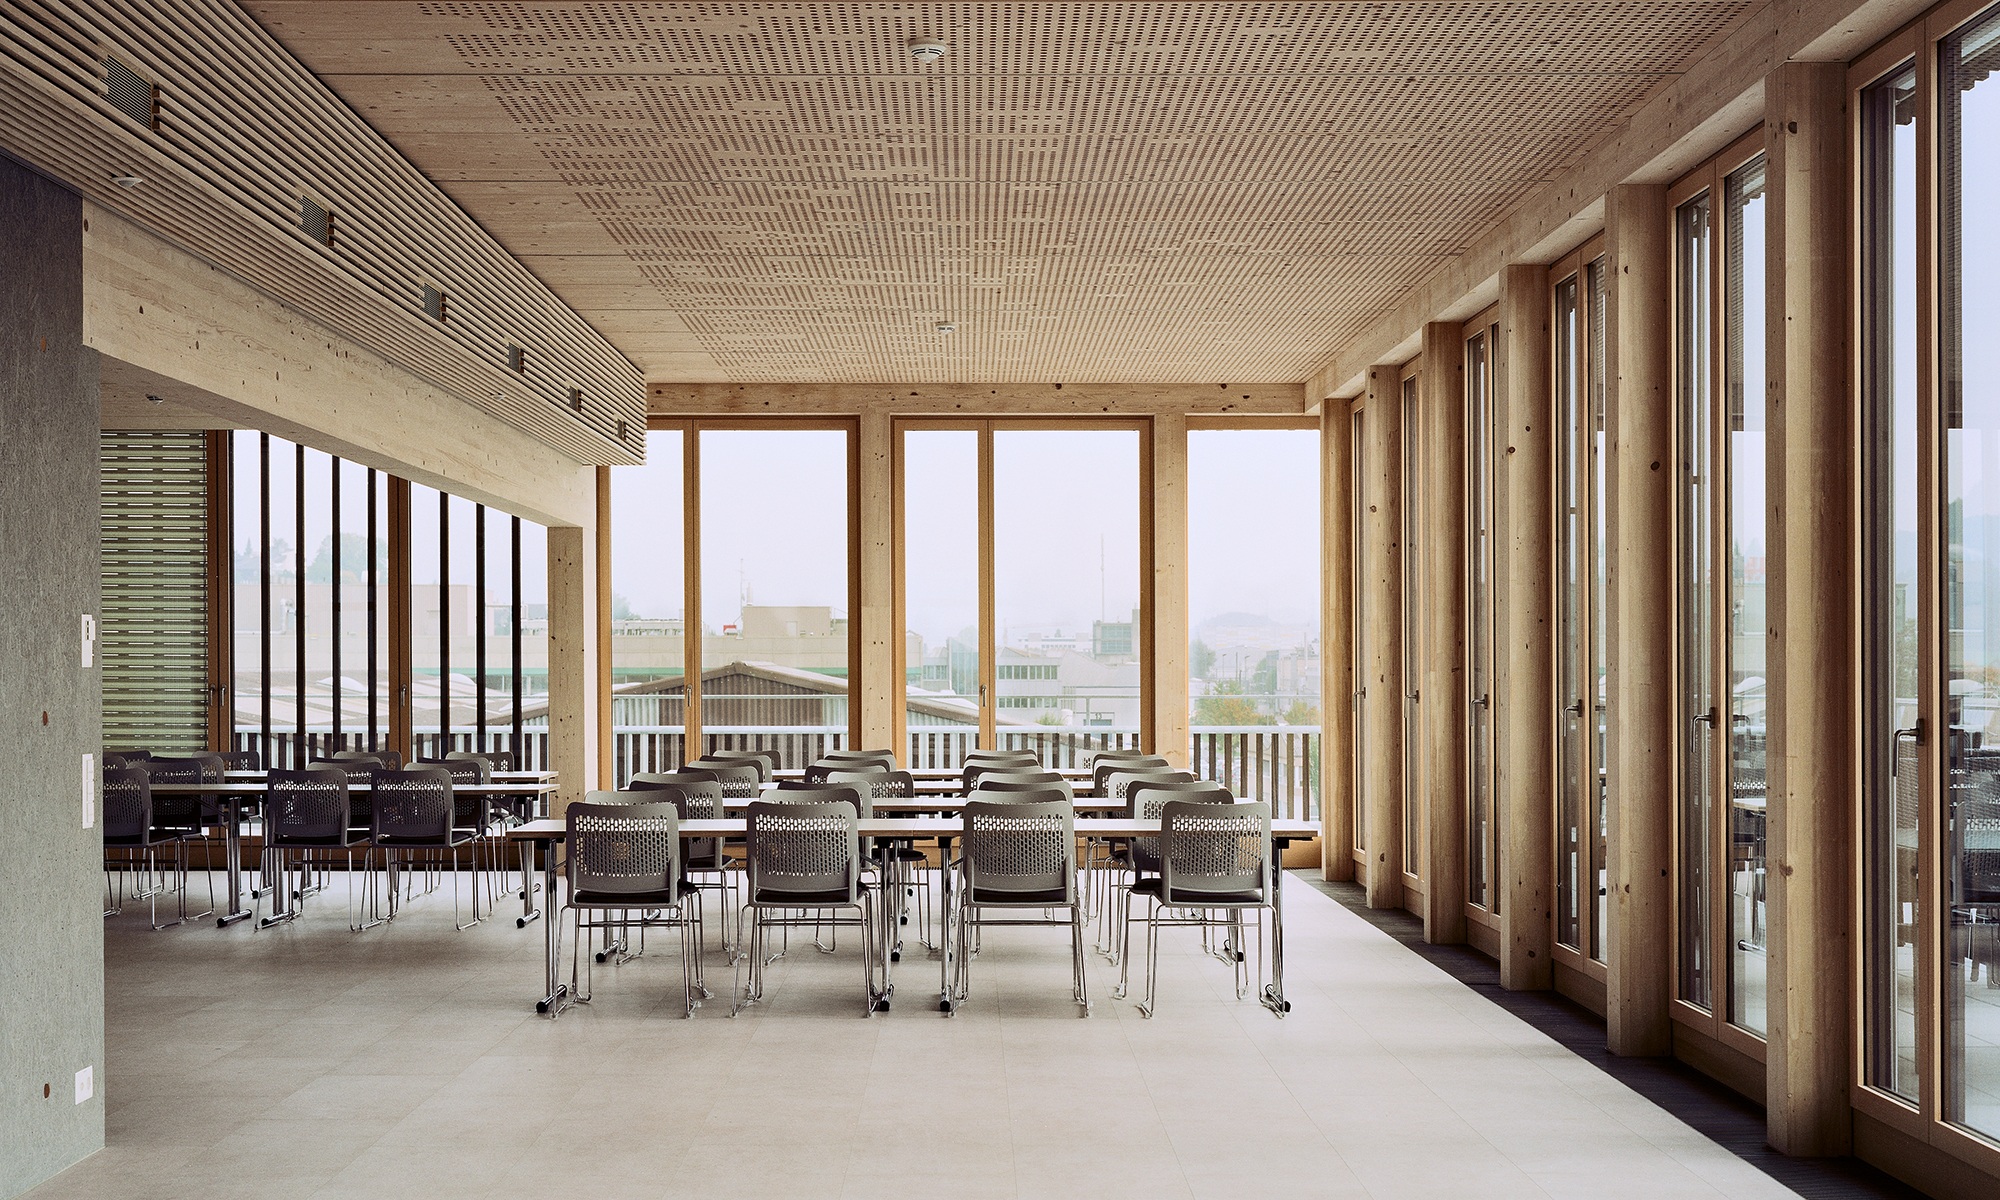 L’espace de détente est équipé de longues tables et de sièges. La pièce est baignée de lumière grâce aux baies vitrées, et les murs ainsi que la structure du toit sont entièrement réalisés en bois.